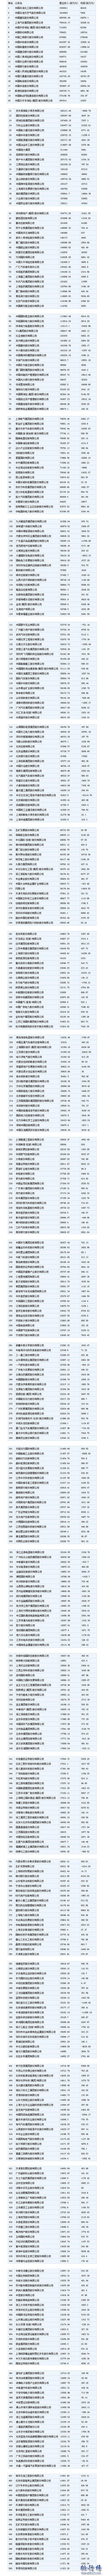 2017年財富中國500強企業排行榜